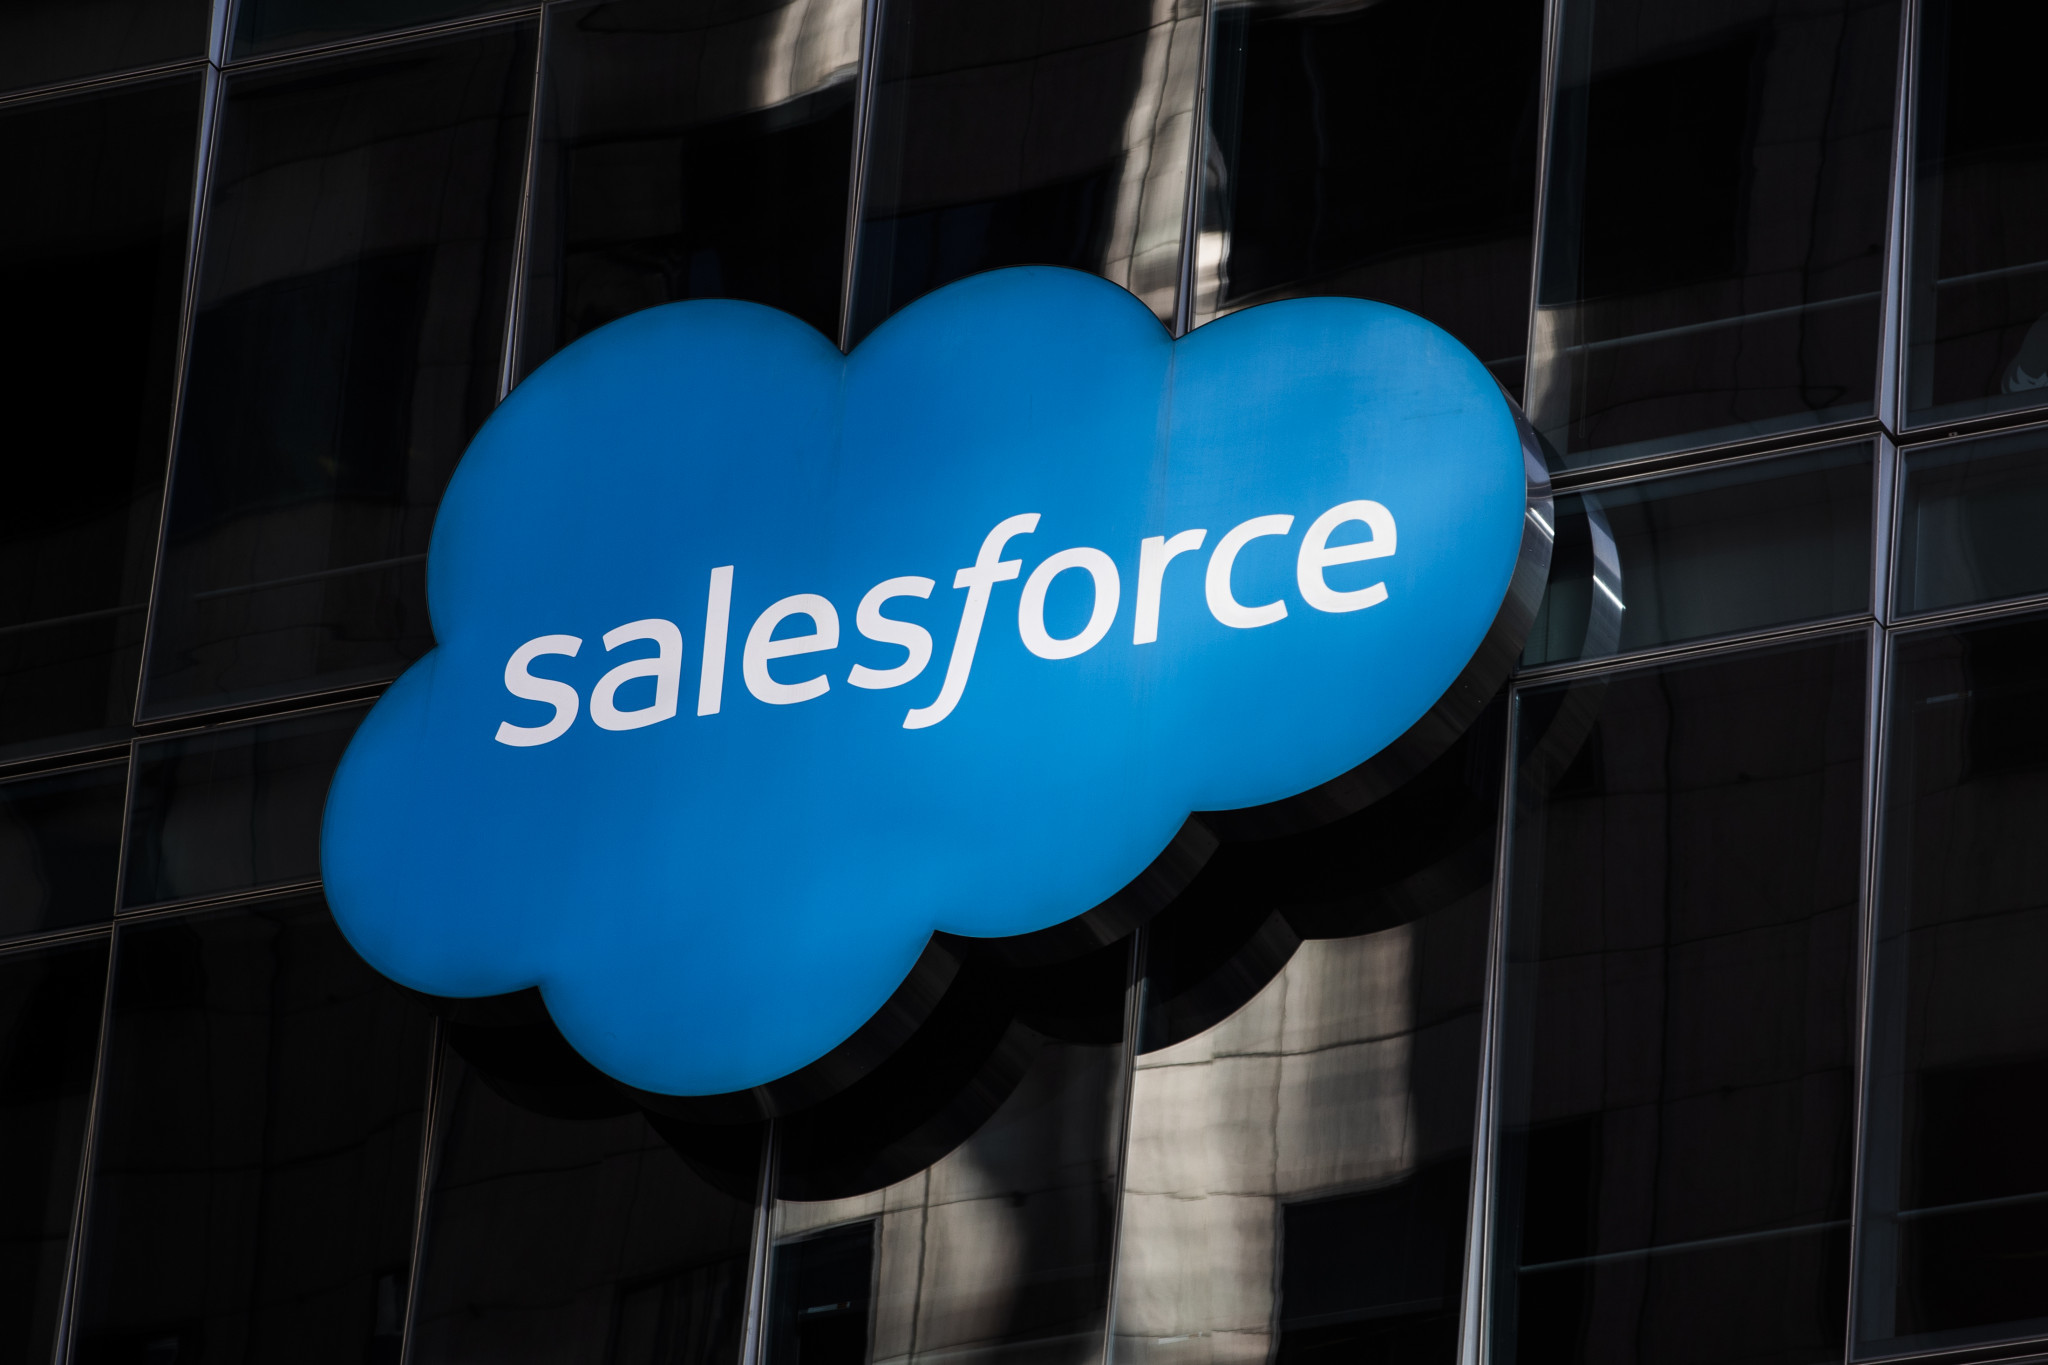 Paris 2024 announces Salesforce as new sponsor